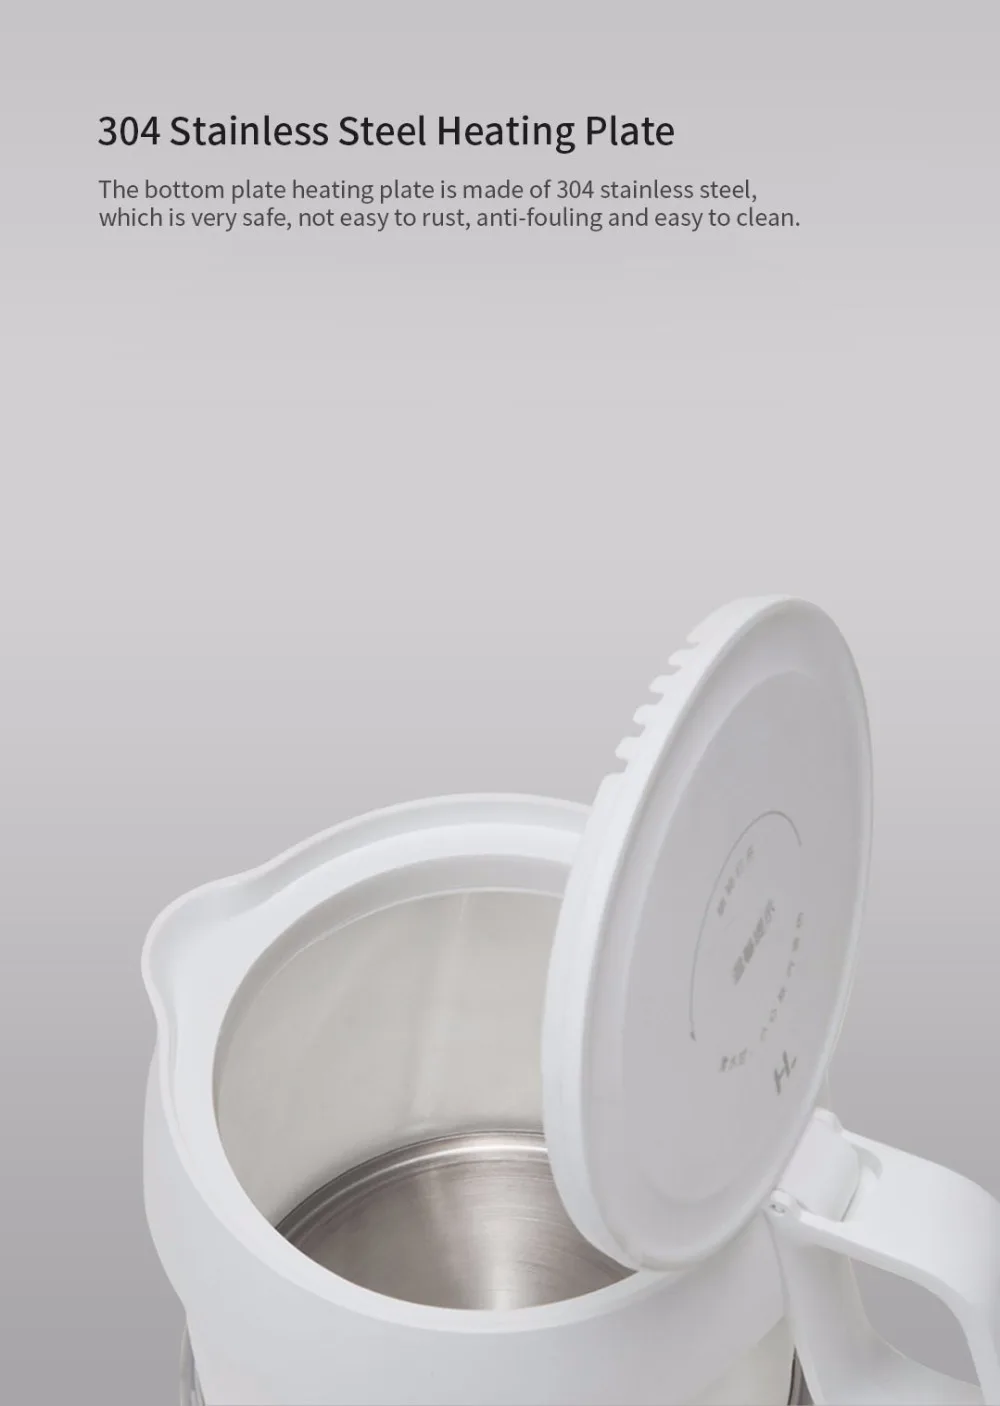 XIAOMI HL складной электрический чайник ручной нагревательный чайник автоматическая защита от помех проводной портативный чайник для путешествий на открытом воздухе